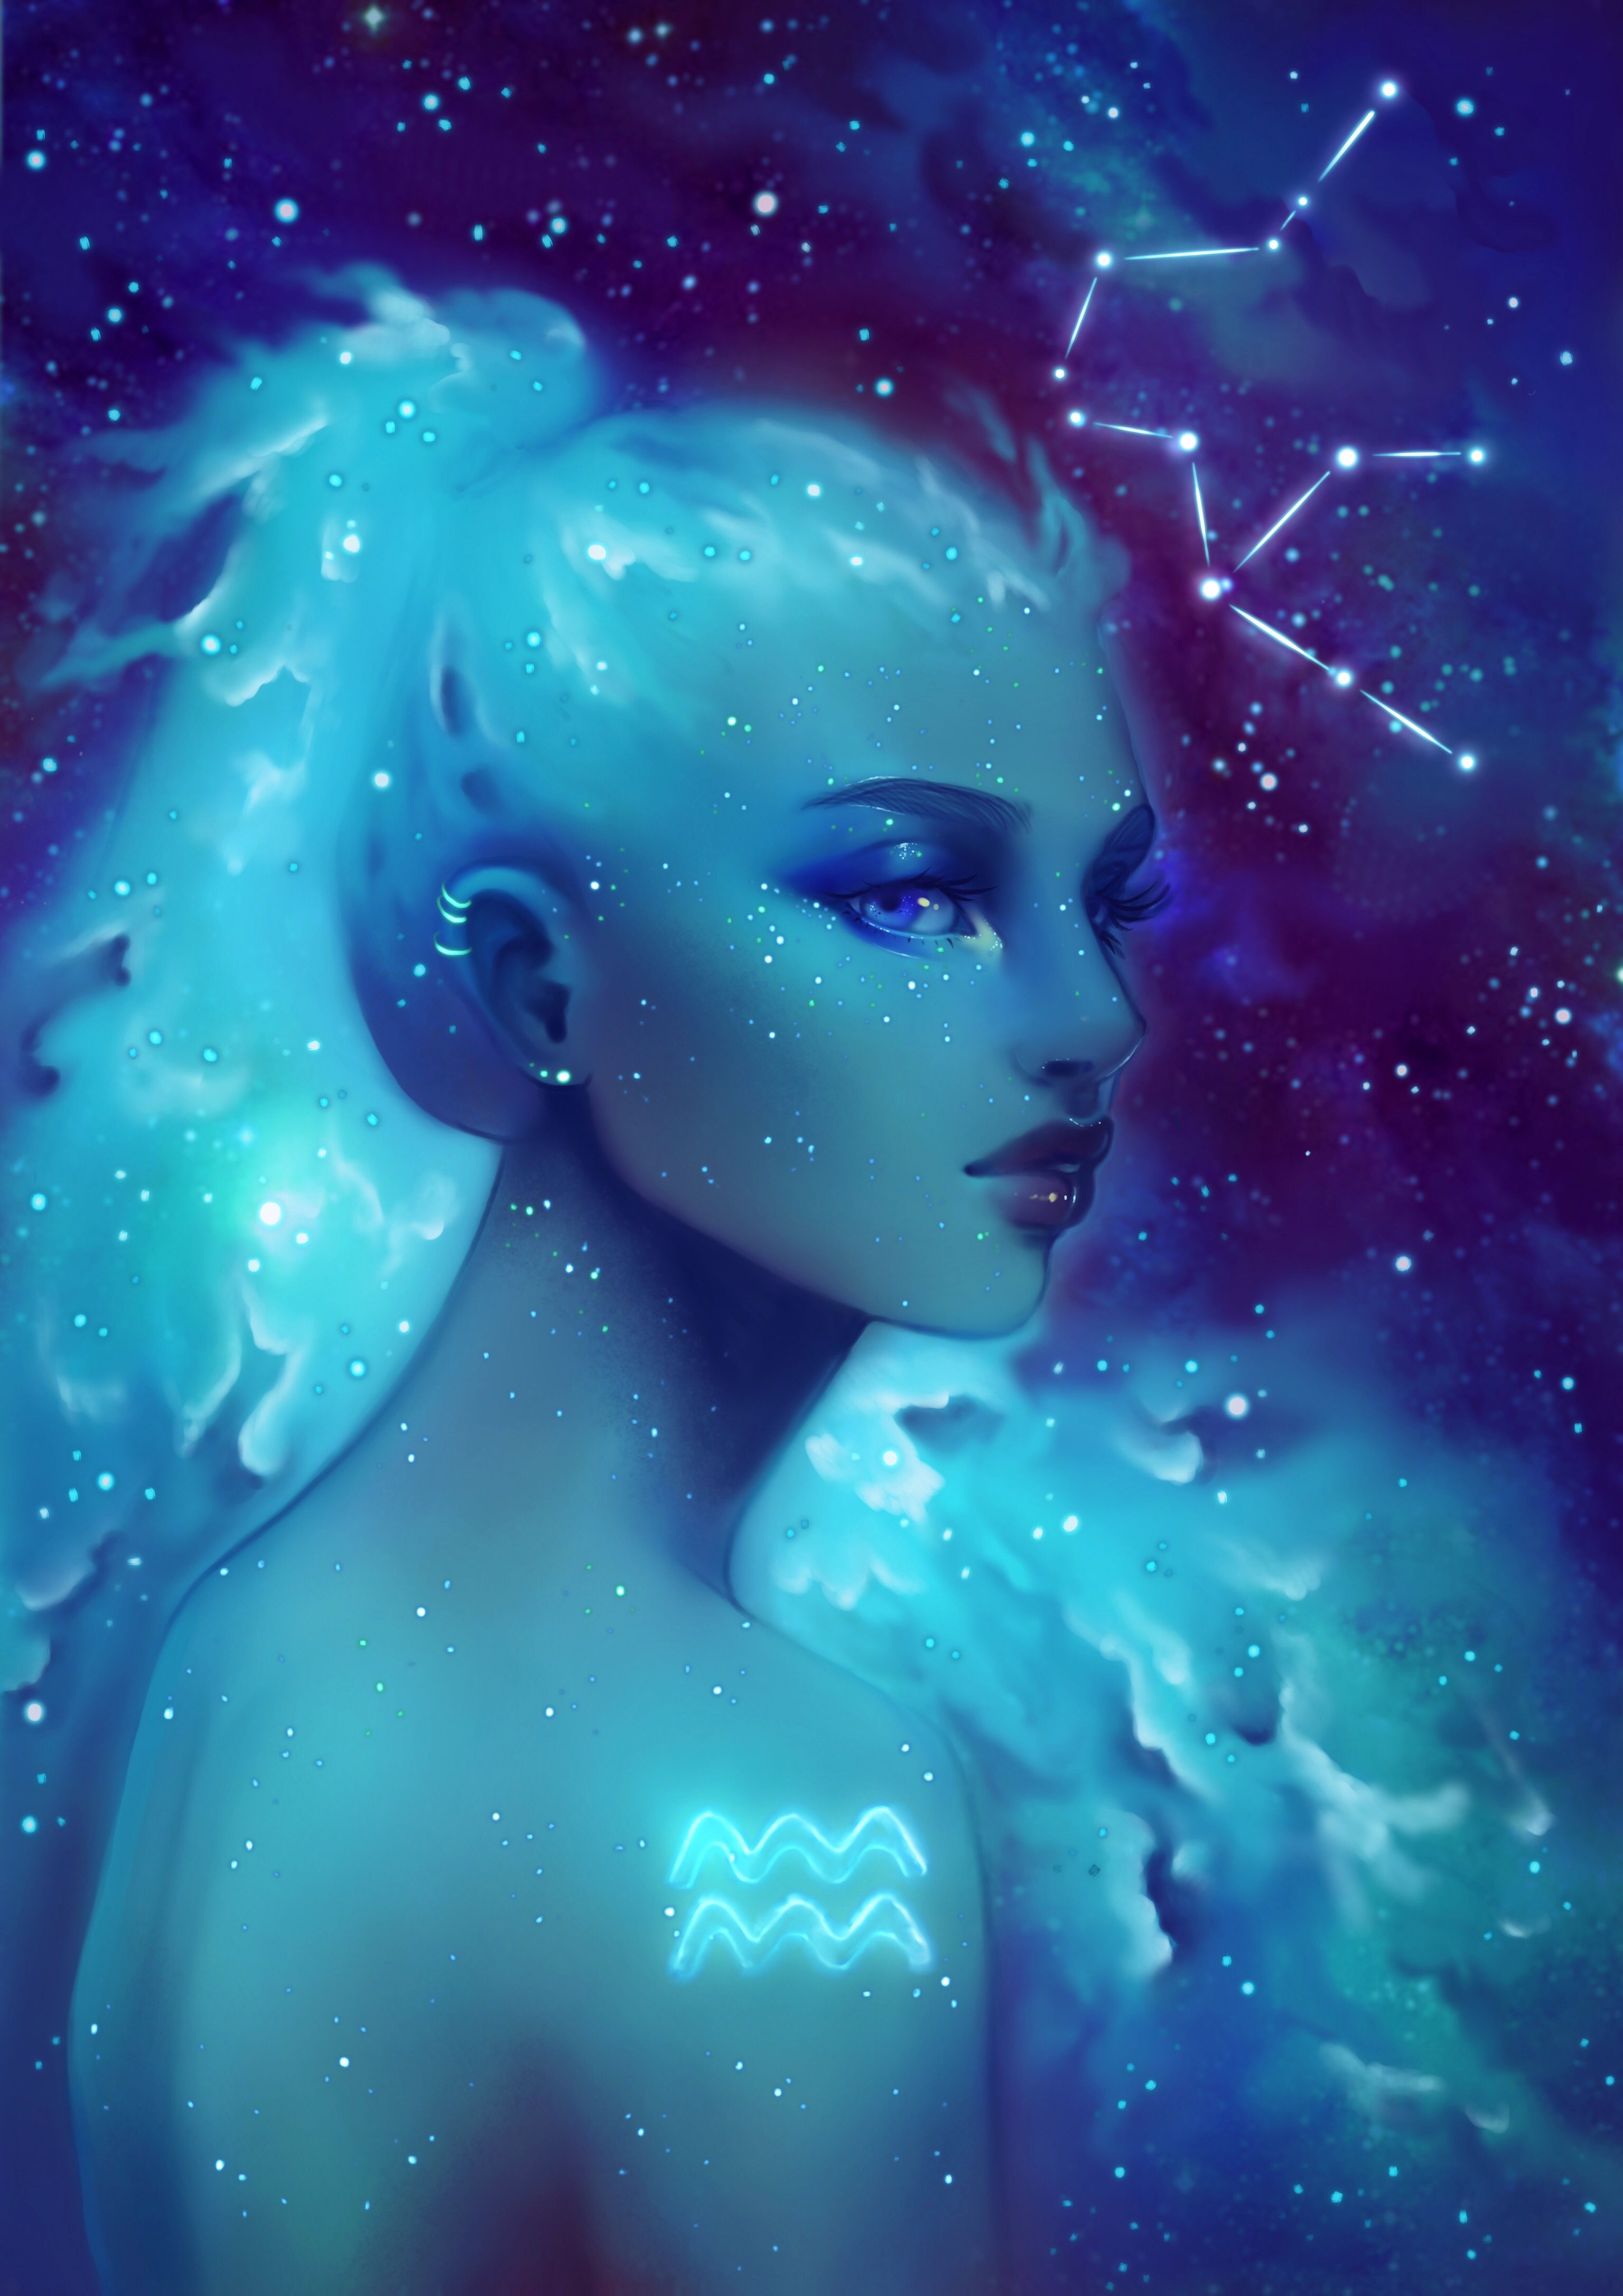 Aquarius cosmic girl by wengo_art. Aquarius art, Aquarius aesthetic, Aquarius image